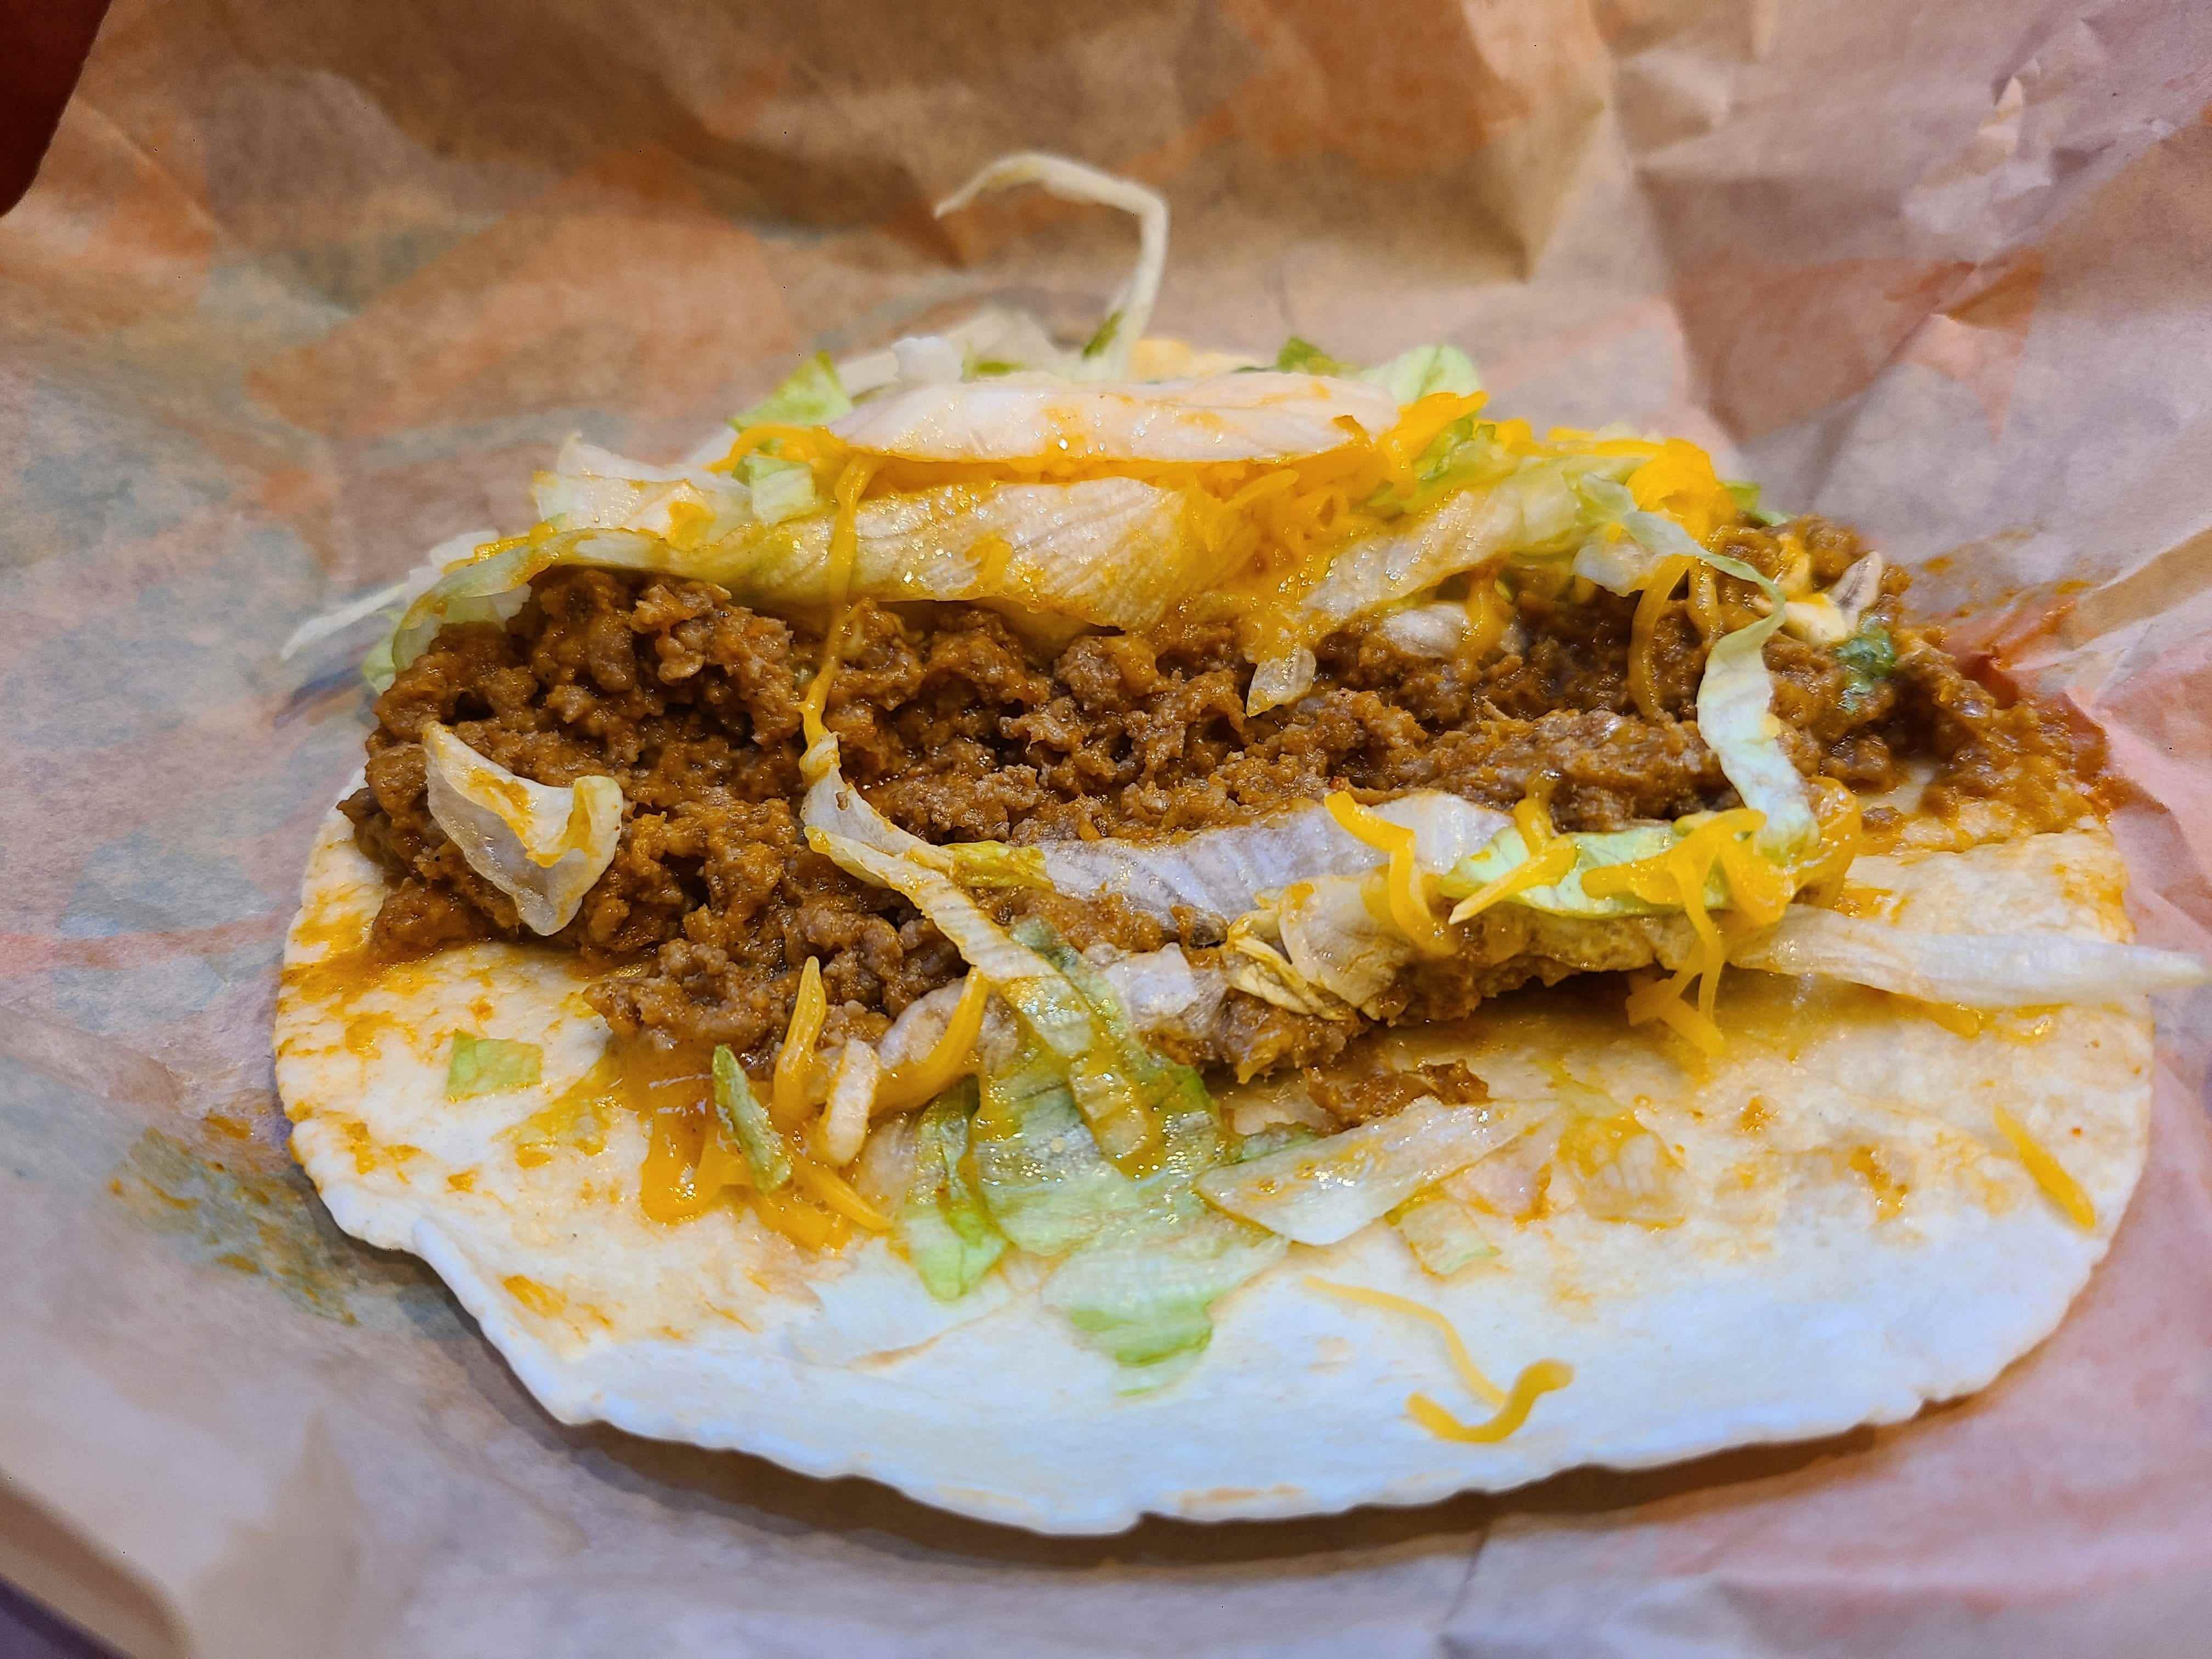 Soft Beef Taco von Taco Bell eröffnet